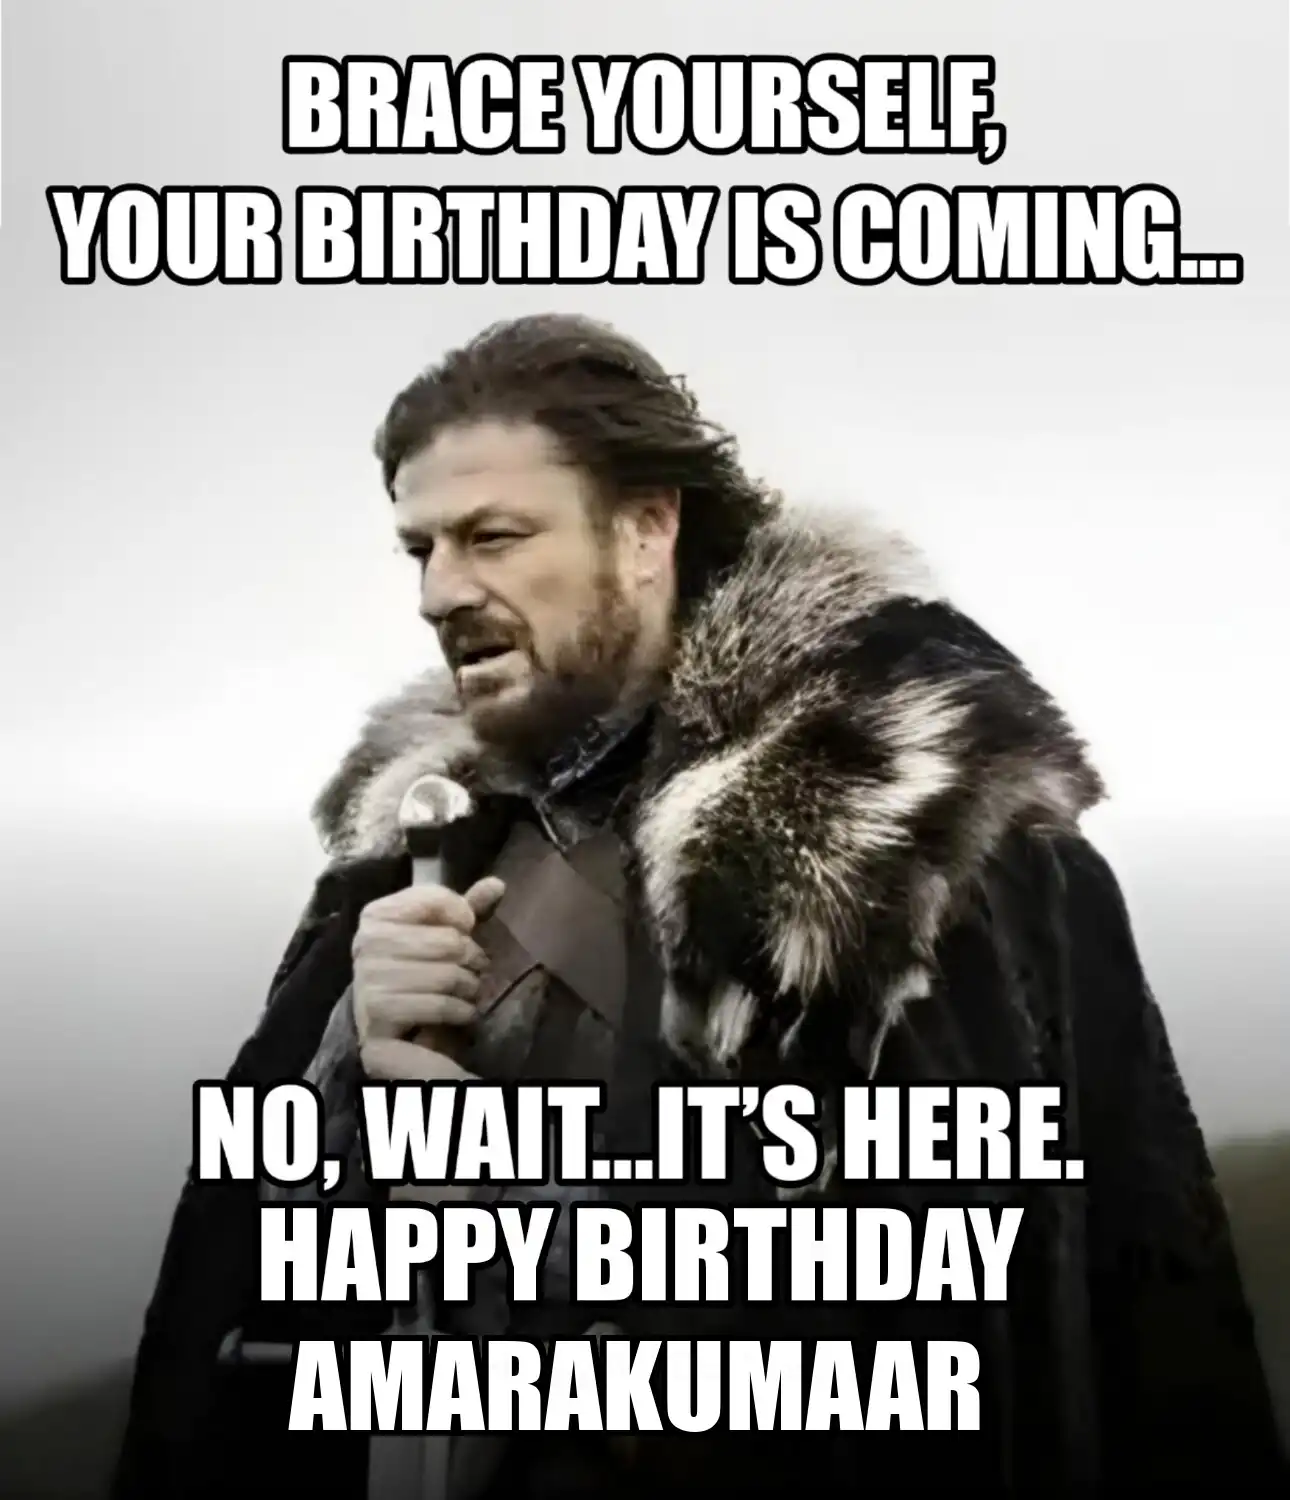 Happy Birthday Amarakumaar Brace Yourself Your Birthday Is Coming Meme